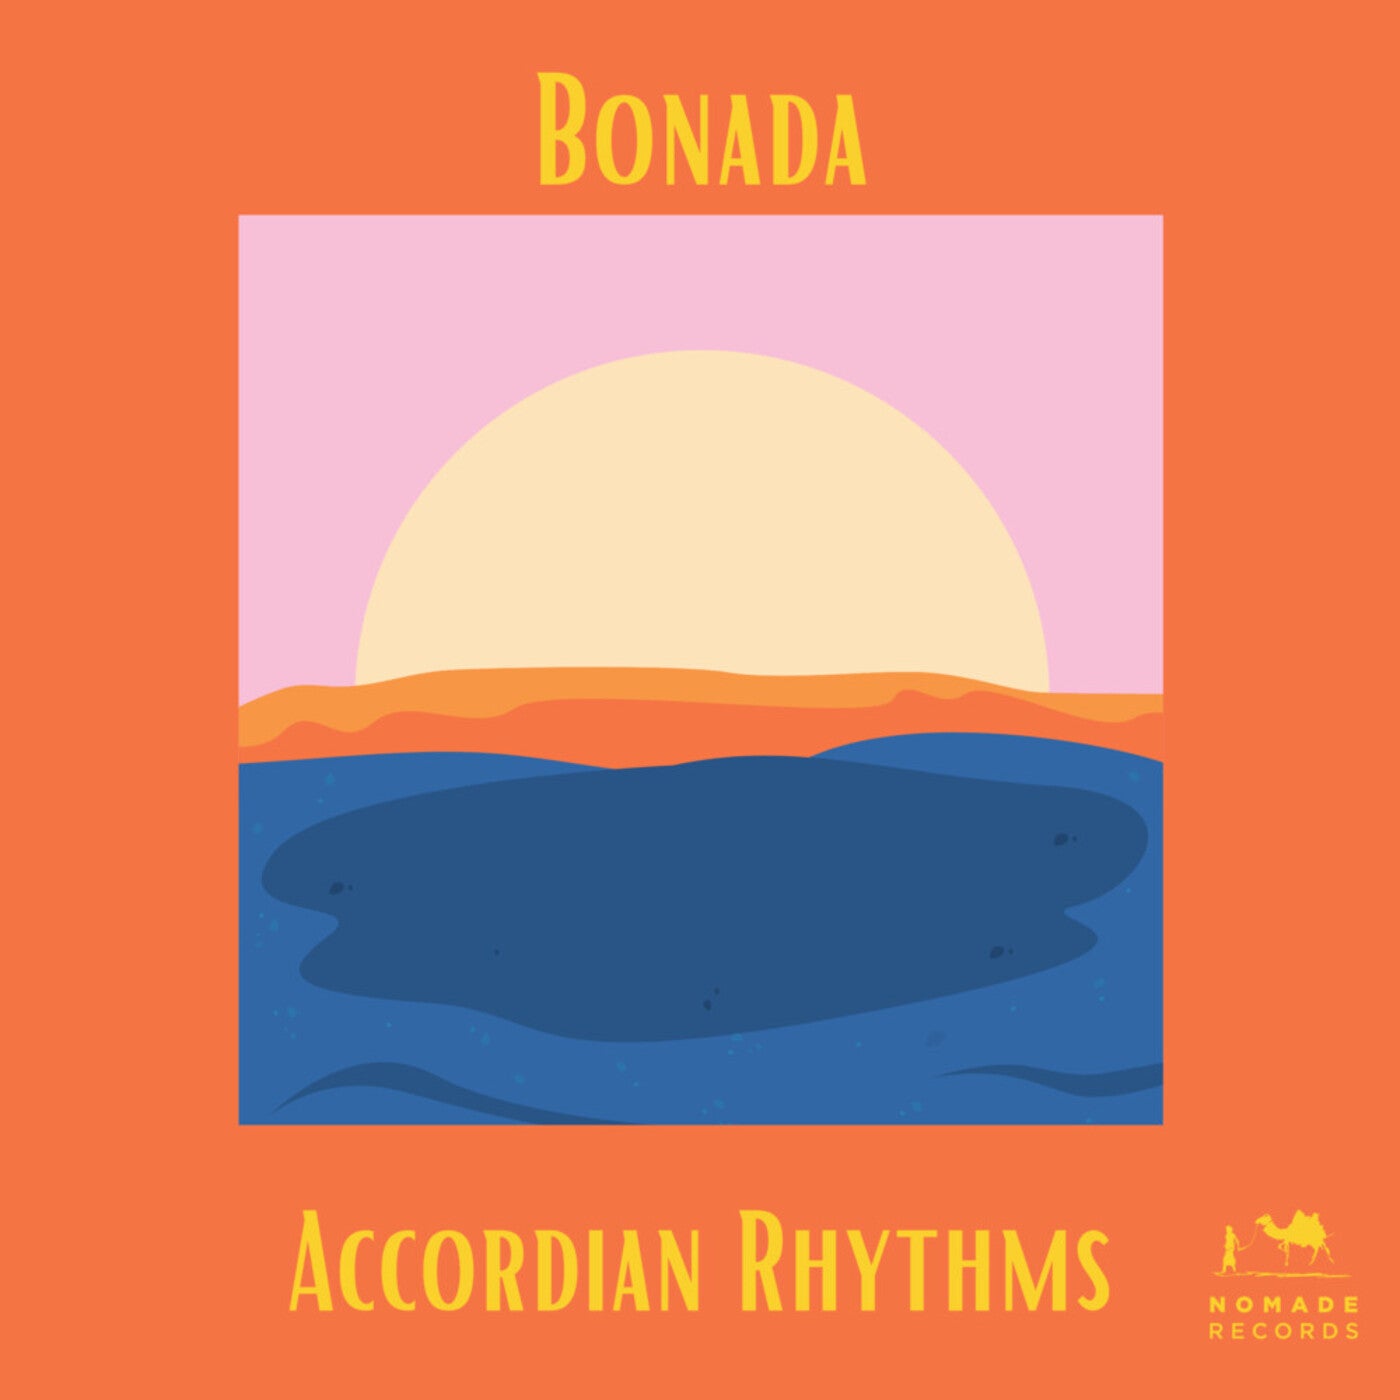 Accordian Rhythms